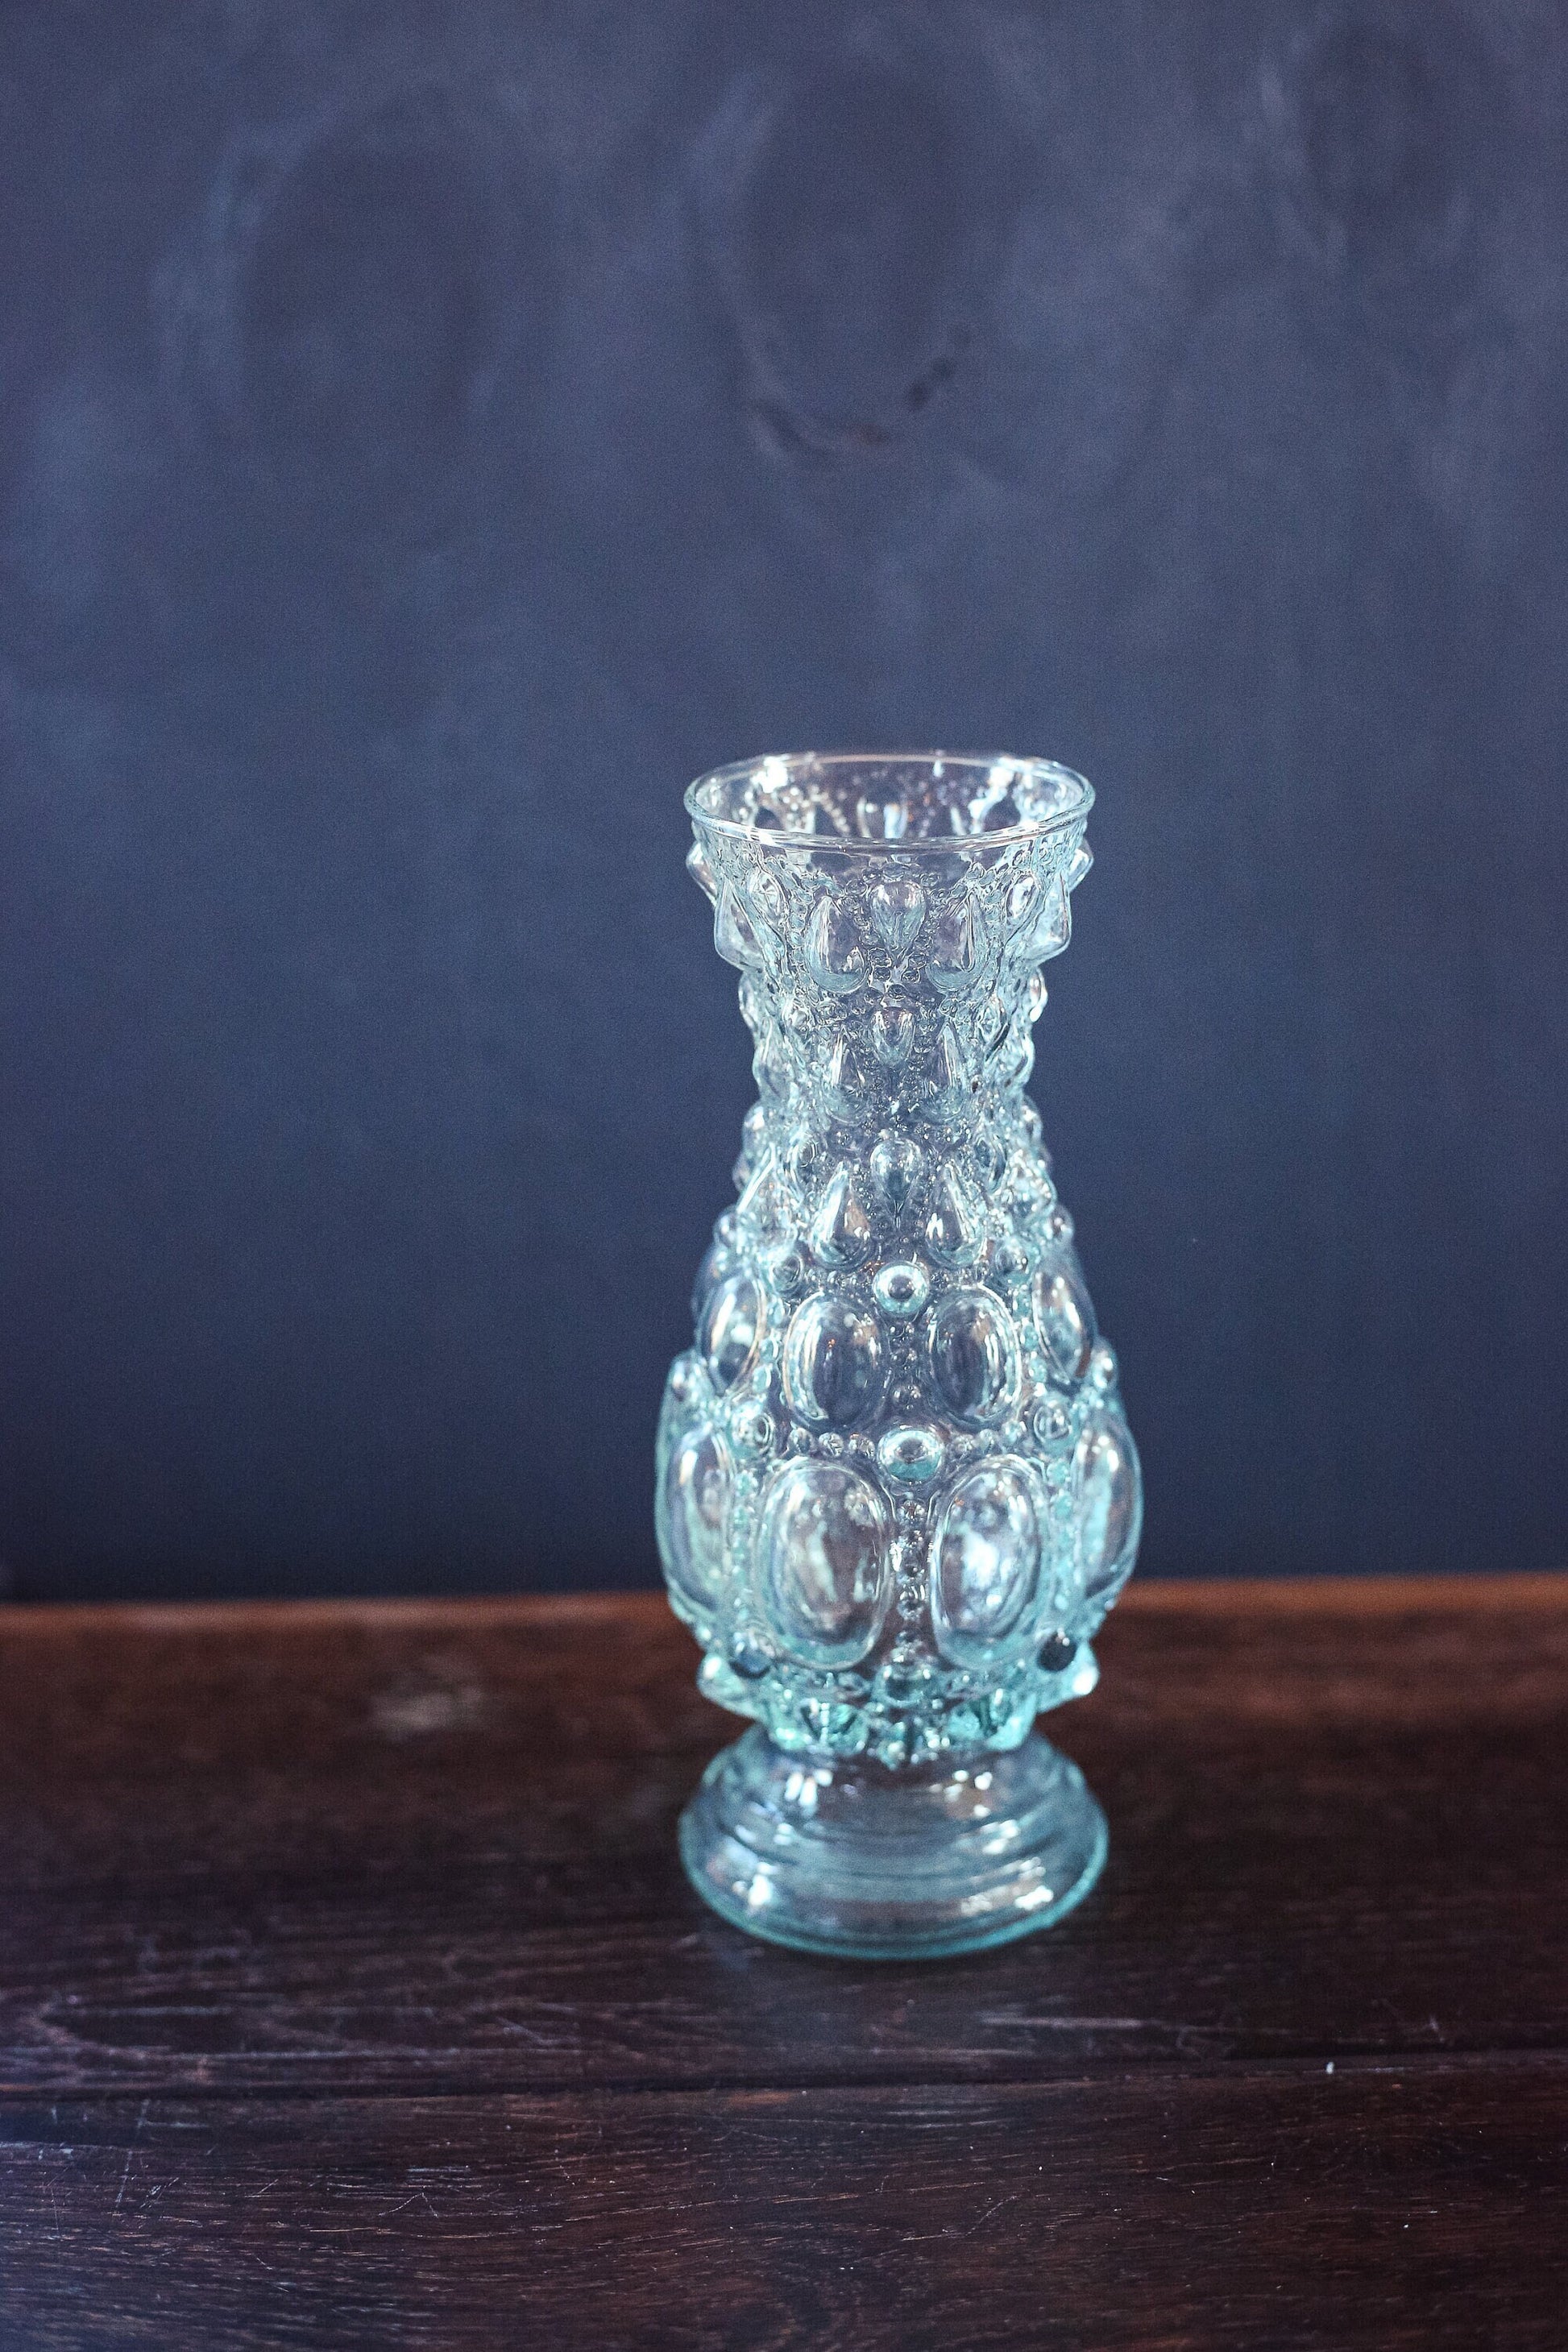 Light Blue Glass Vase with Bubble Texture - Vintage Glass Vase